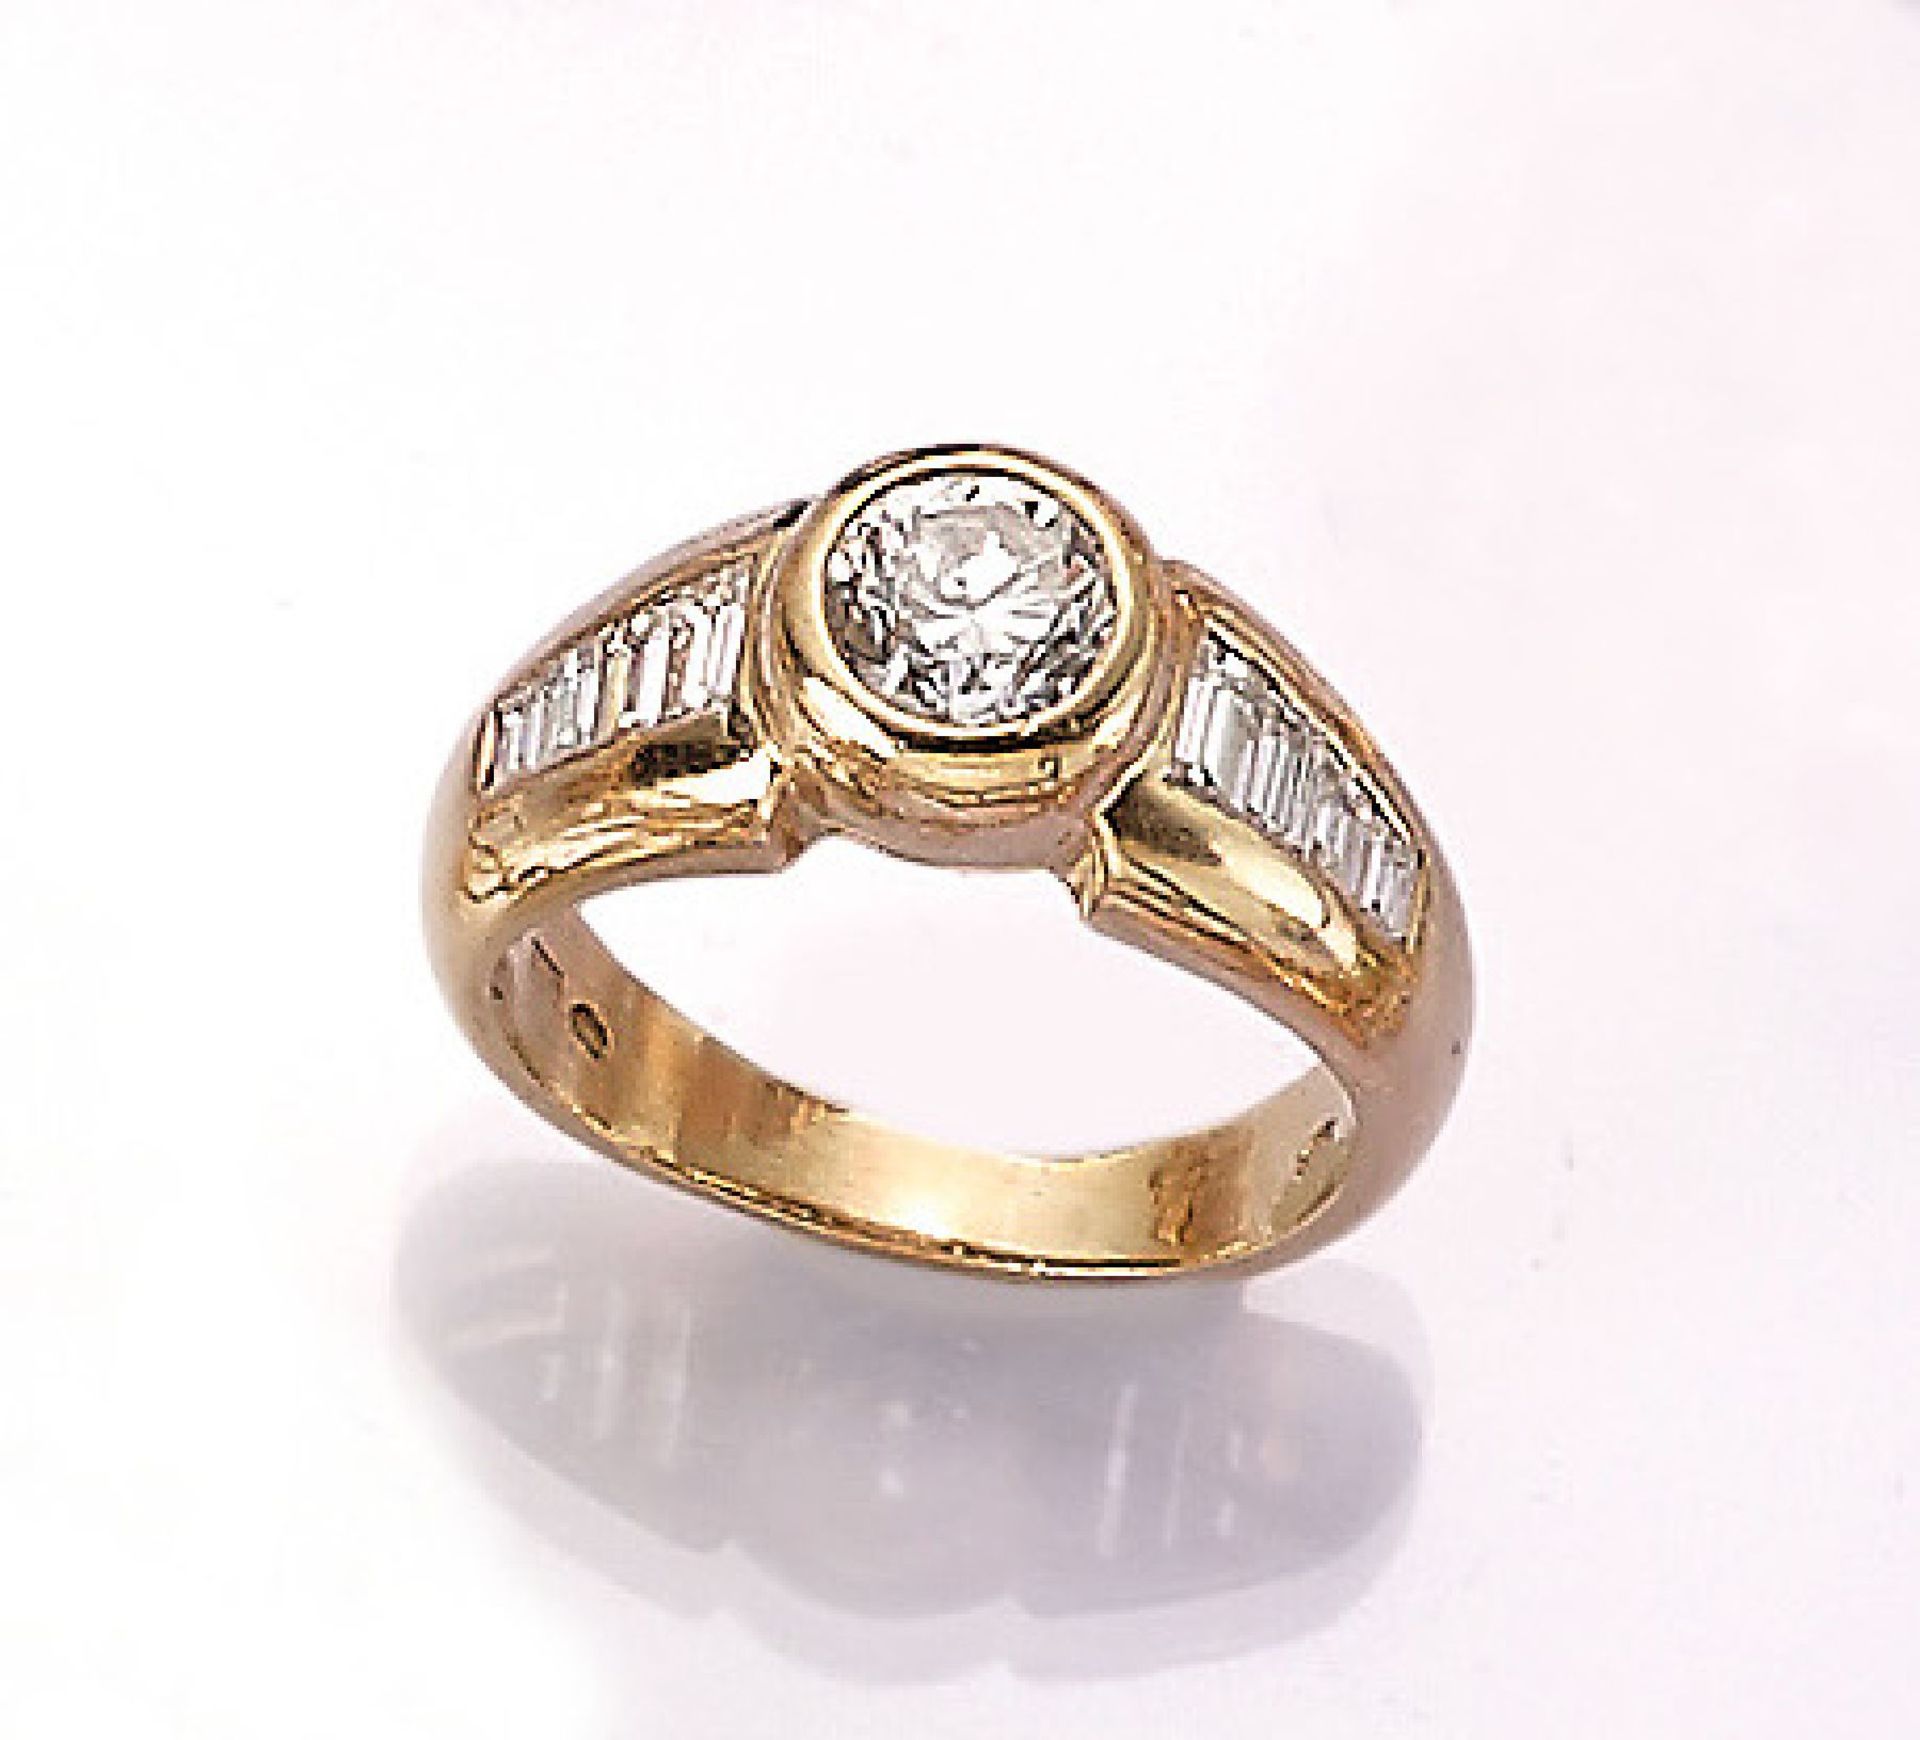 18 kt Gold Ring mit Brillant und Diamantbaguettes, GG 750/000, mittig Brillant ca. 0.75 ct Weiß/